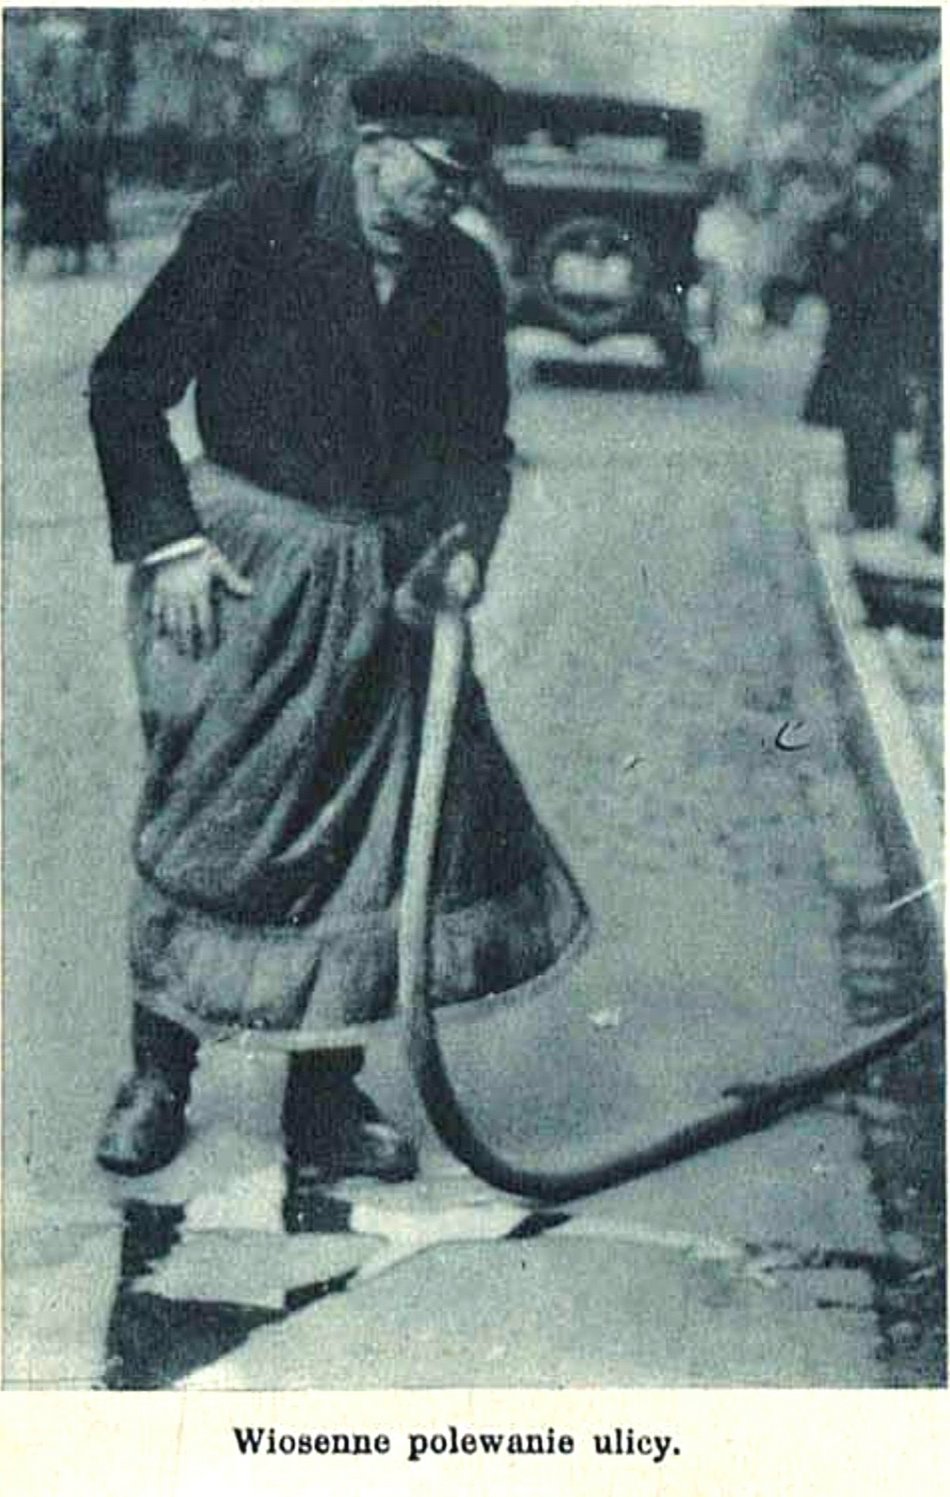 Dozorca myje ulicę